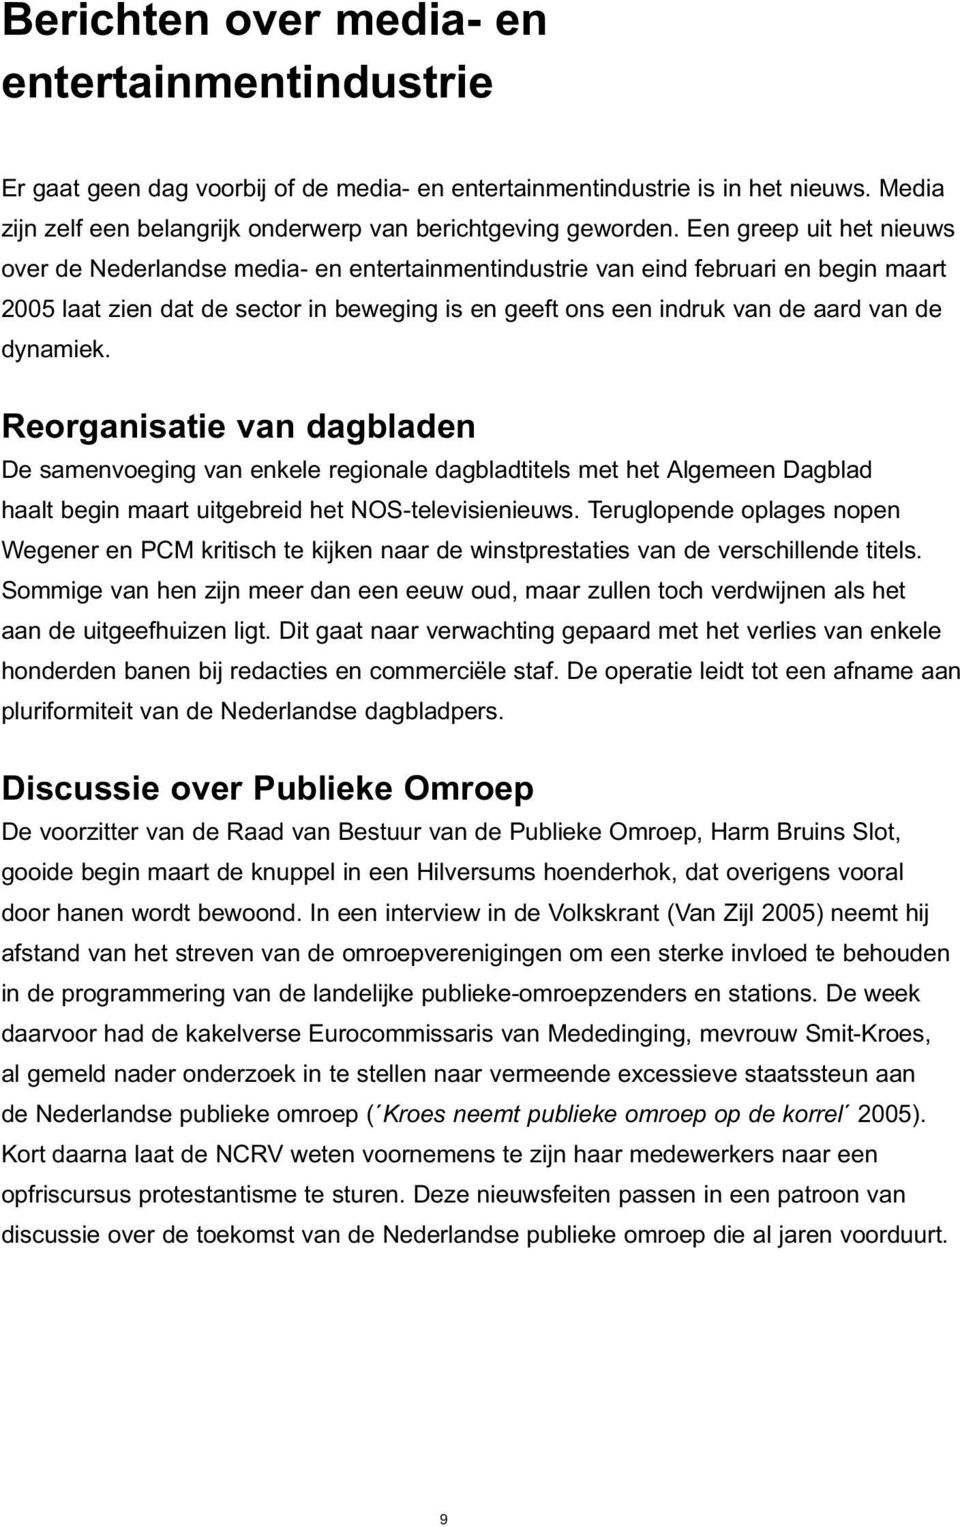 dynamiek. Reorganisatie van dagbladen De samenvoeging van enkele regionale dagbladtitels met het Algemeen Dagblad haalt begin maart uitgebreid het NOS-televisienieuws.